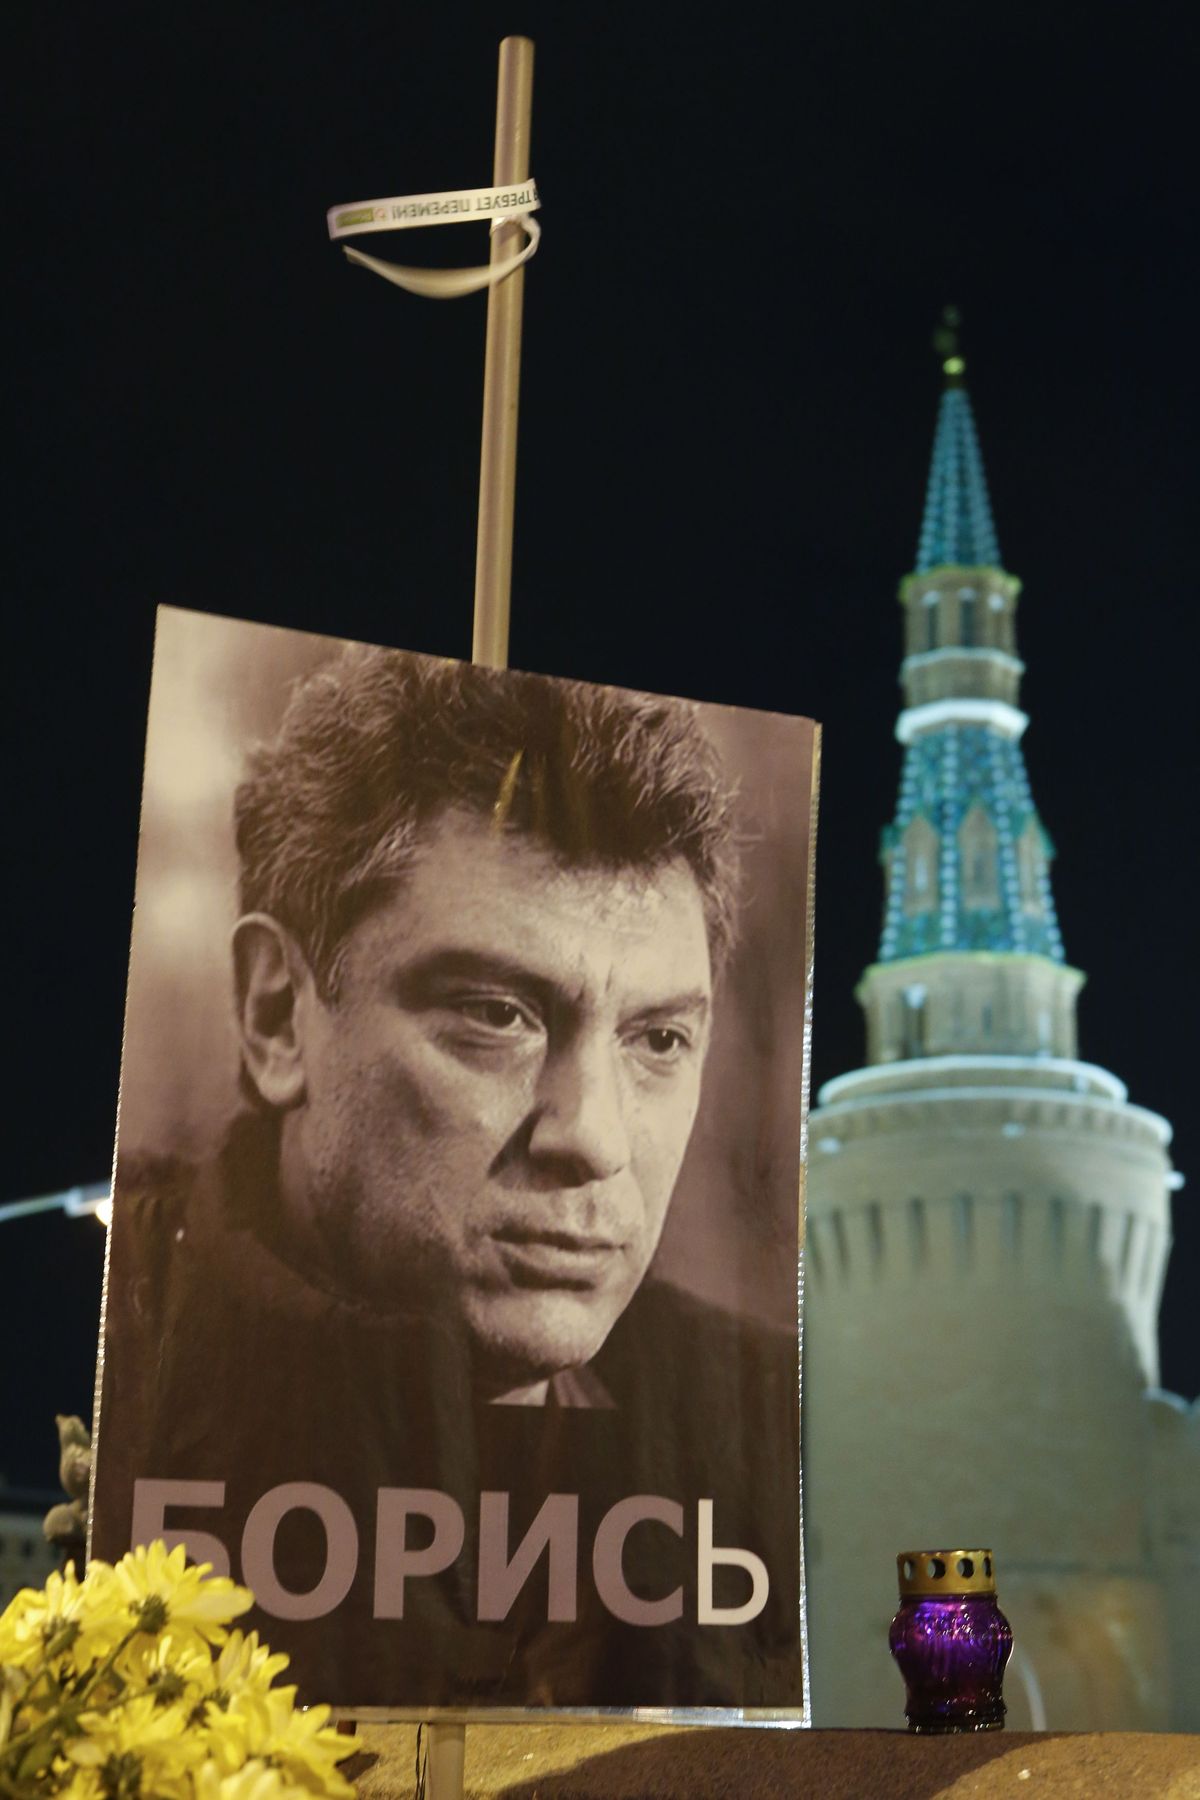 Стихийный мемориал в память о Борисе Немцове на месте его убийства недалеко от Кремля на Большом Москворецком мосту, Москва, март 2015 года.